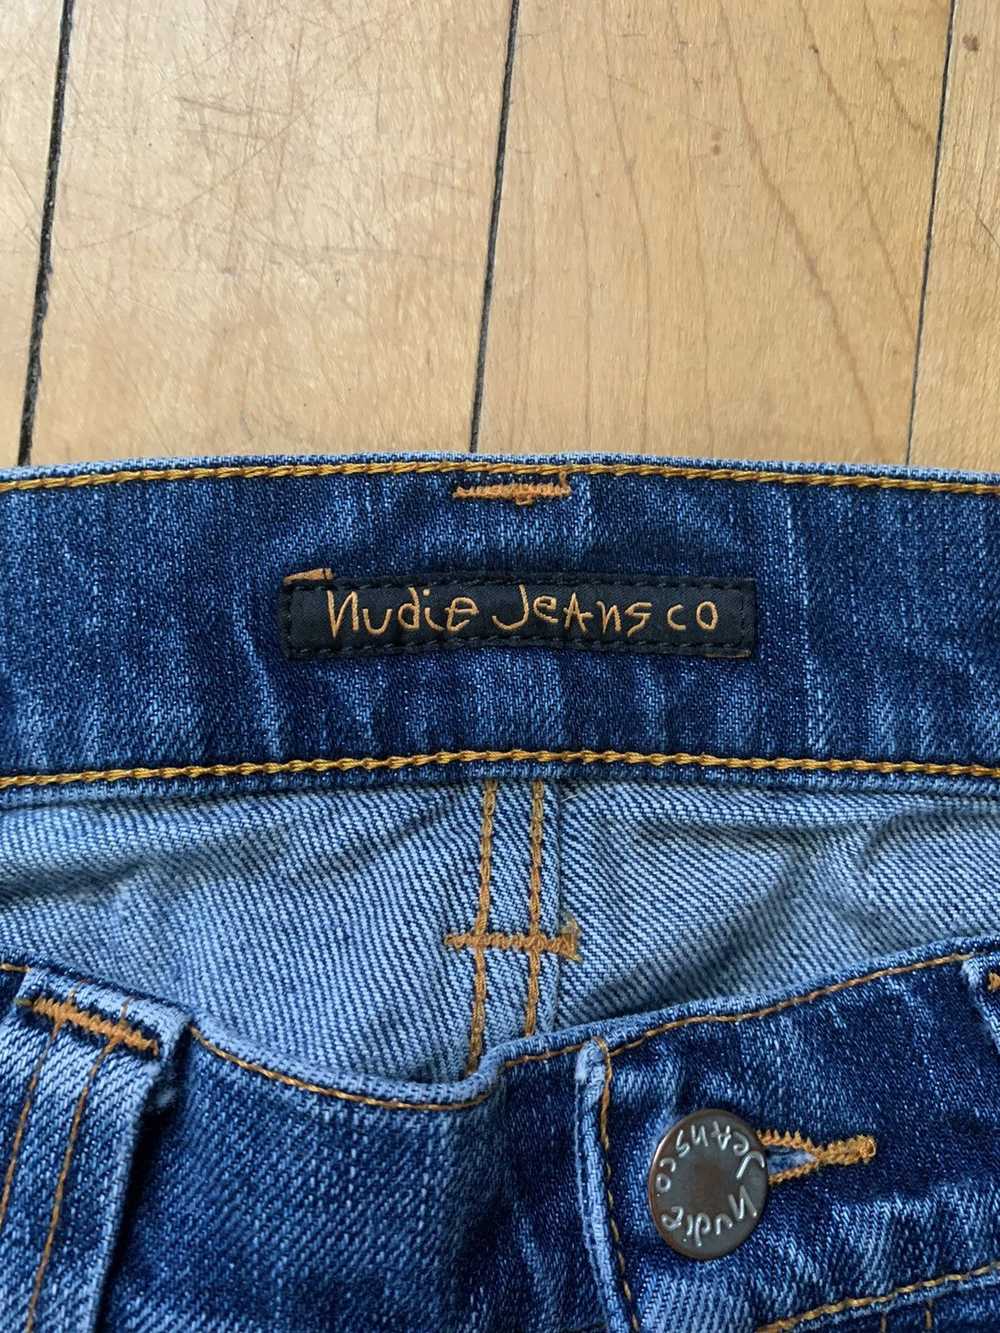 Nudie Jeans Nudie jeans - image 2